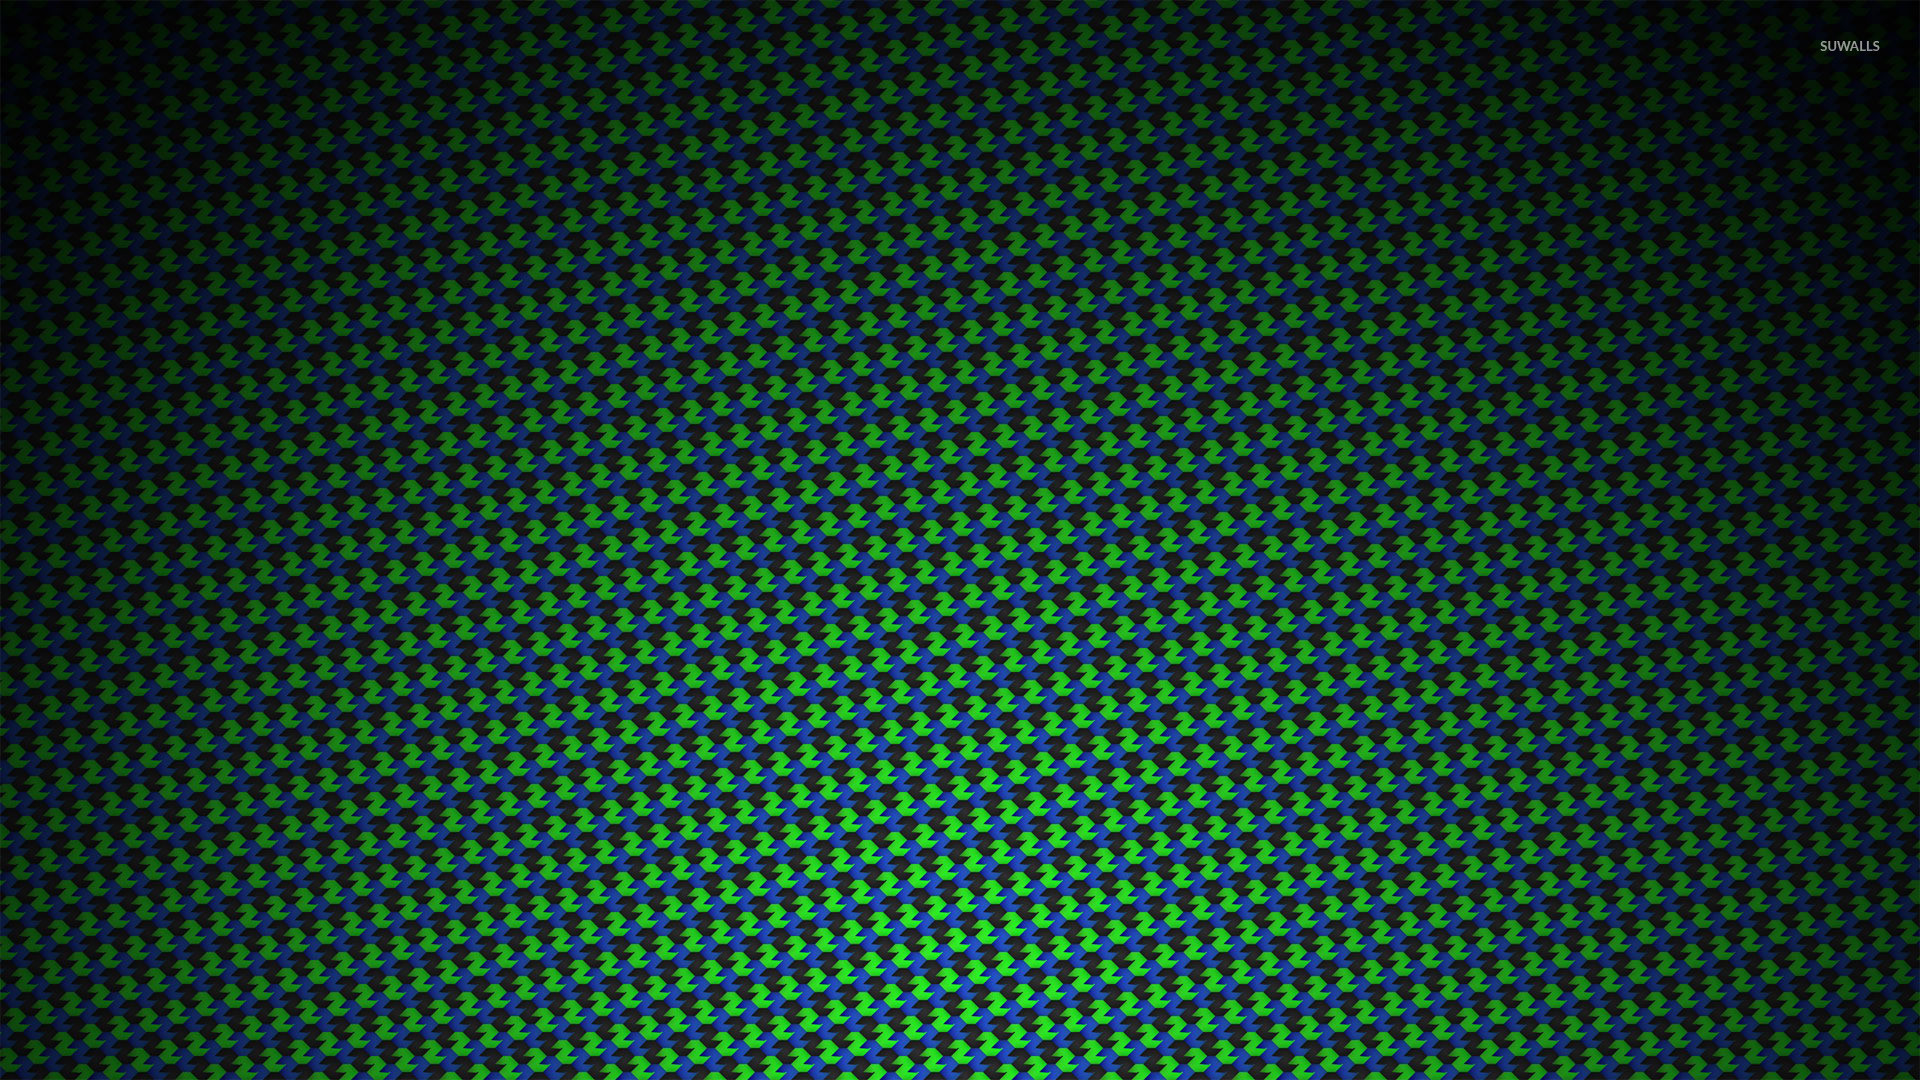 1920x1080 Neon pattern wallpaper  jpg